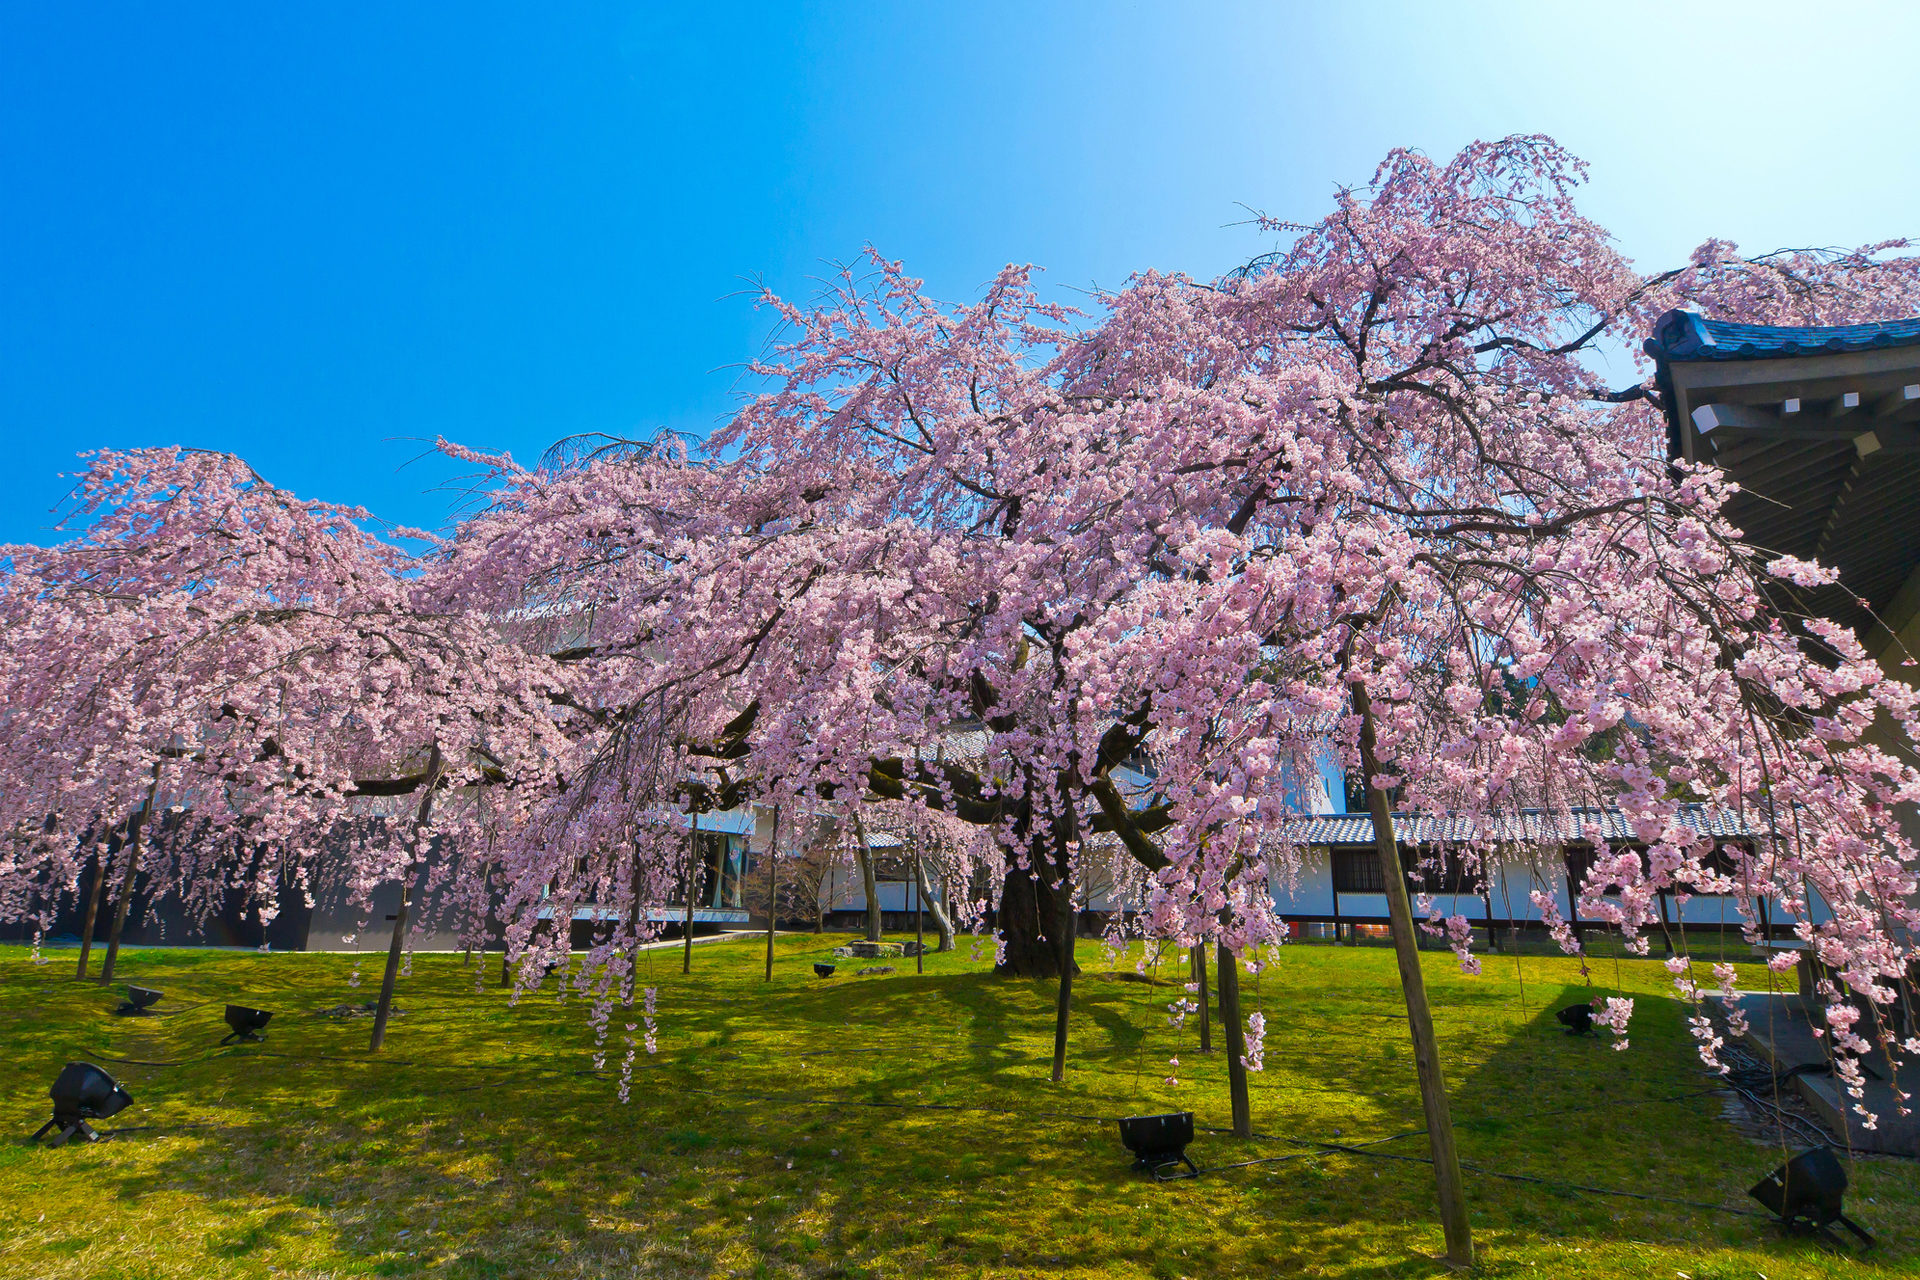 22年春 1番綺麗な京都の桜のスポットは Caedekyoto カエデ京都 紅葉と伝統美を引き継ぐバッグ